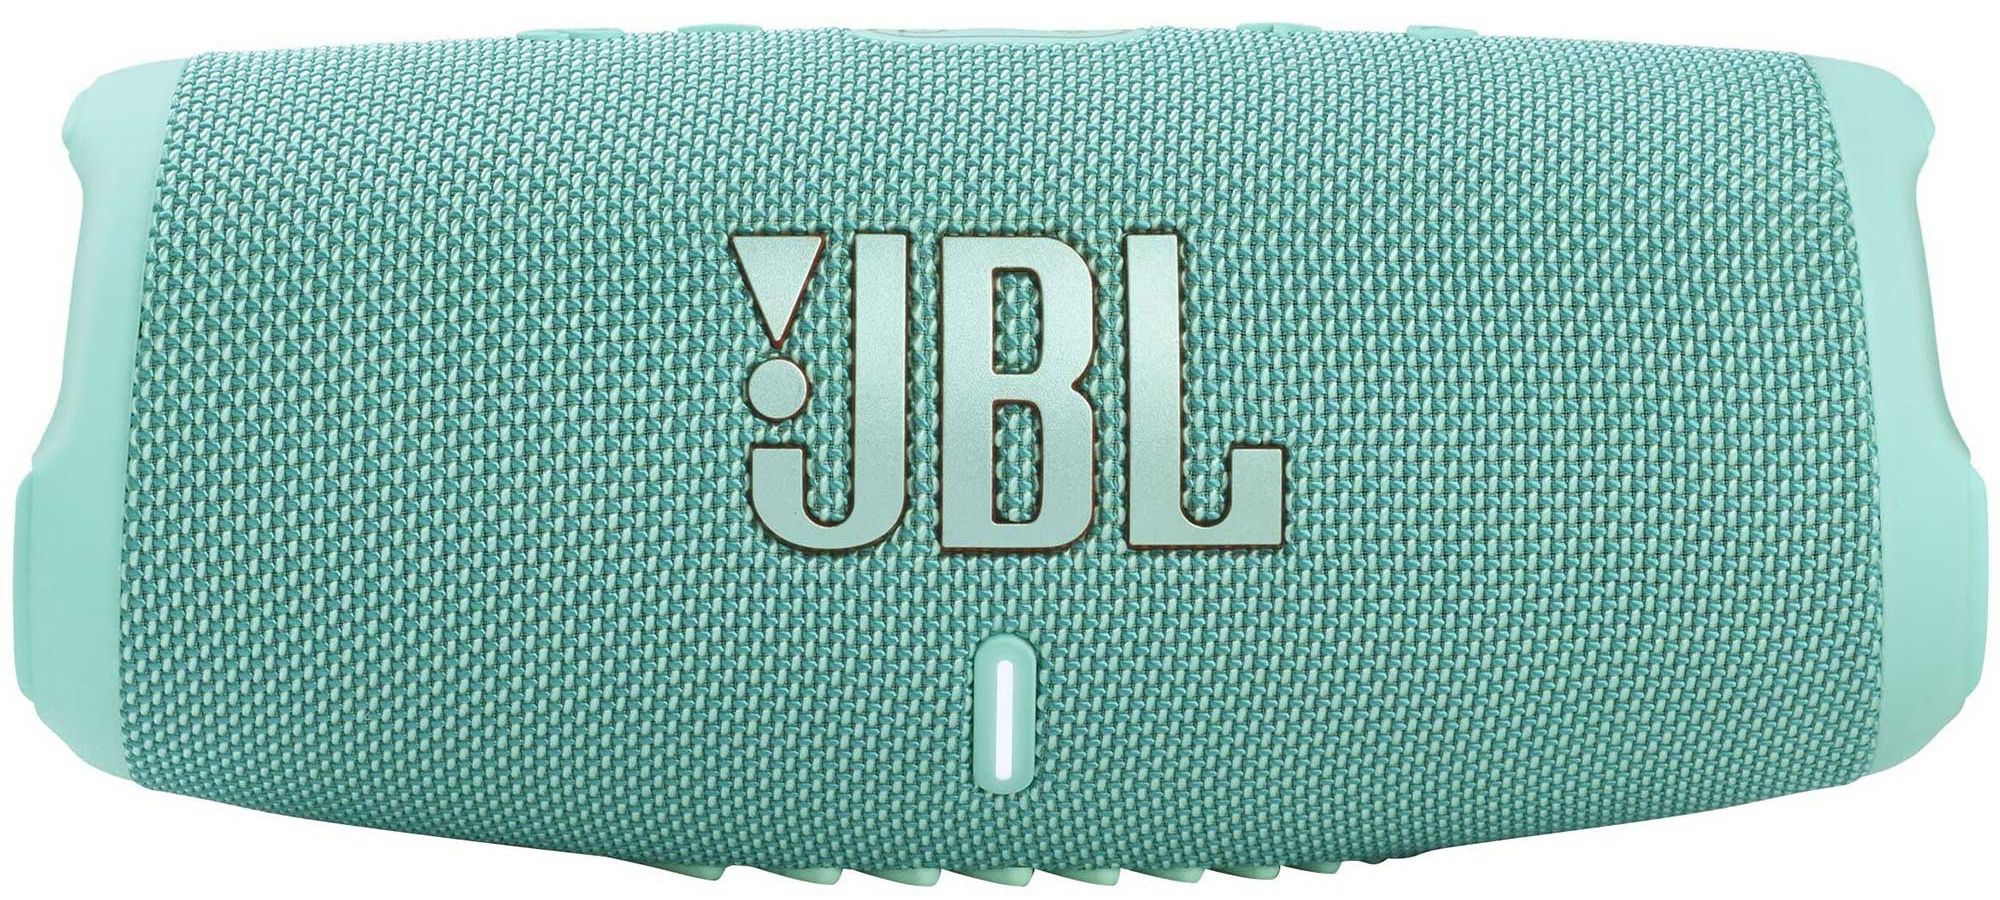 Портативная акустика JBL Charge 5 Teal портативная колонка jbl charge 5 jblcharge5squad стерео 40вт bluetooth 20 ч зеленый